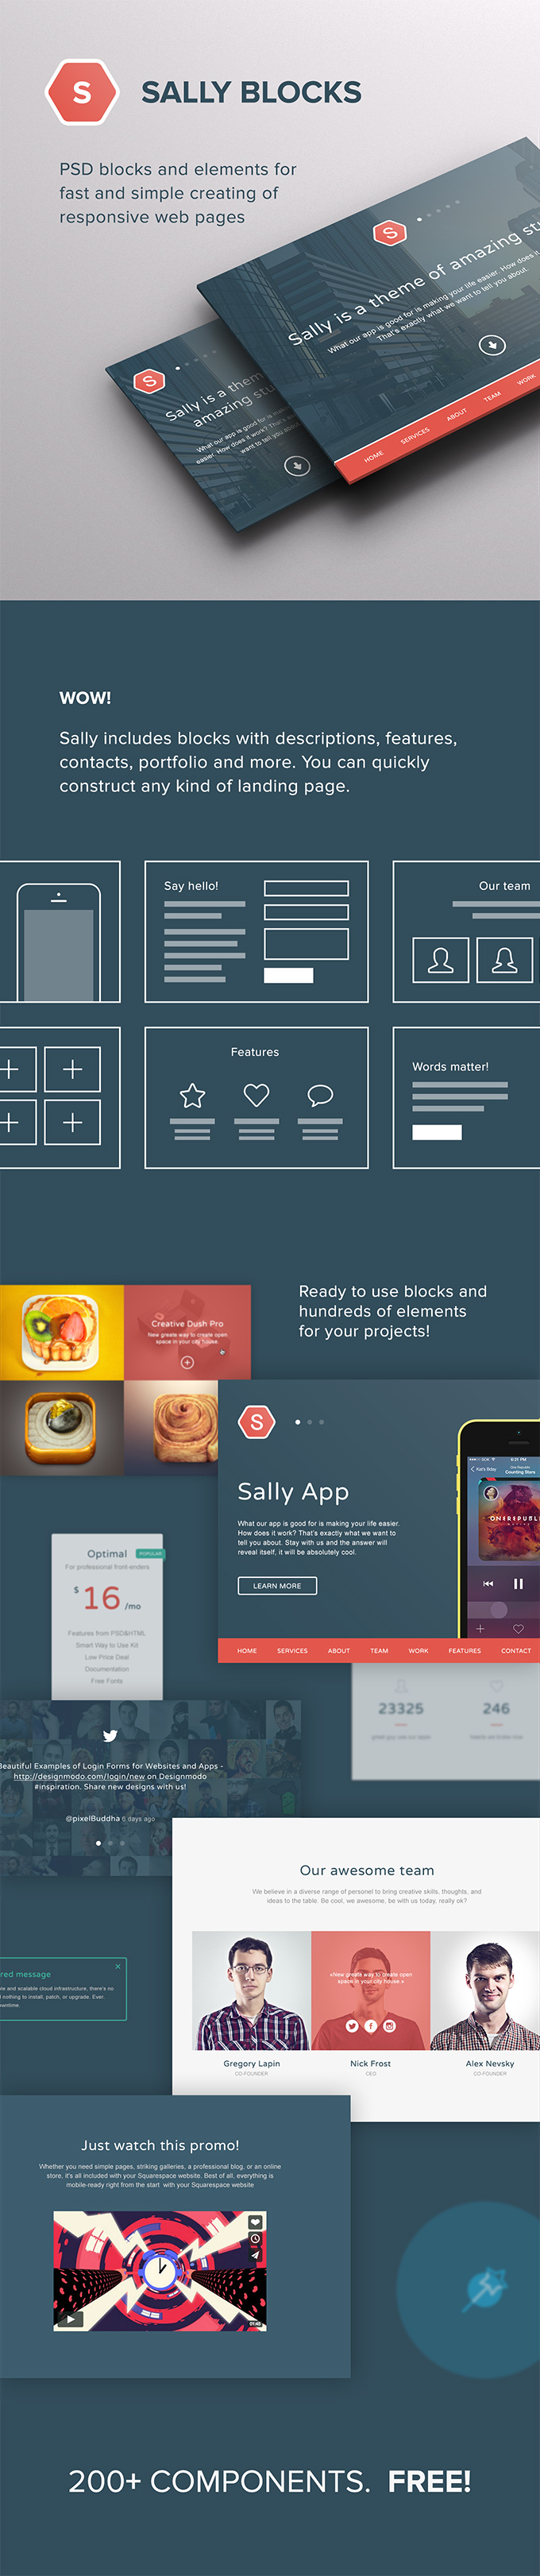 Sally Blocks UI kit